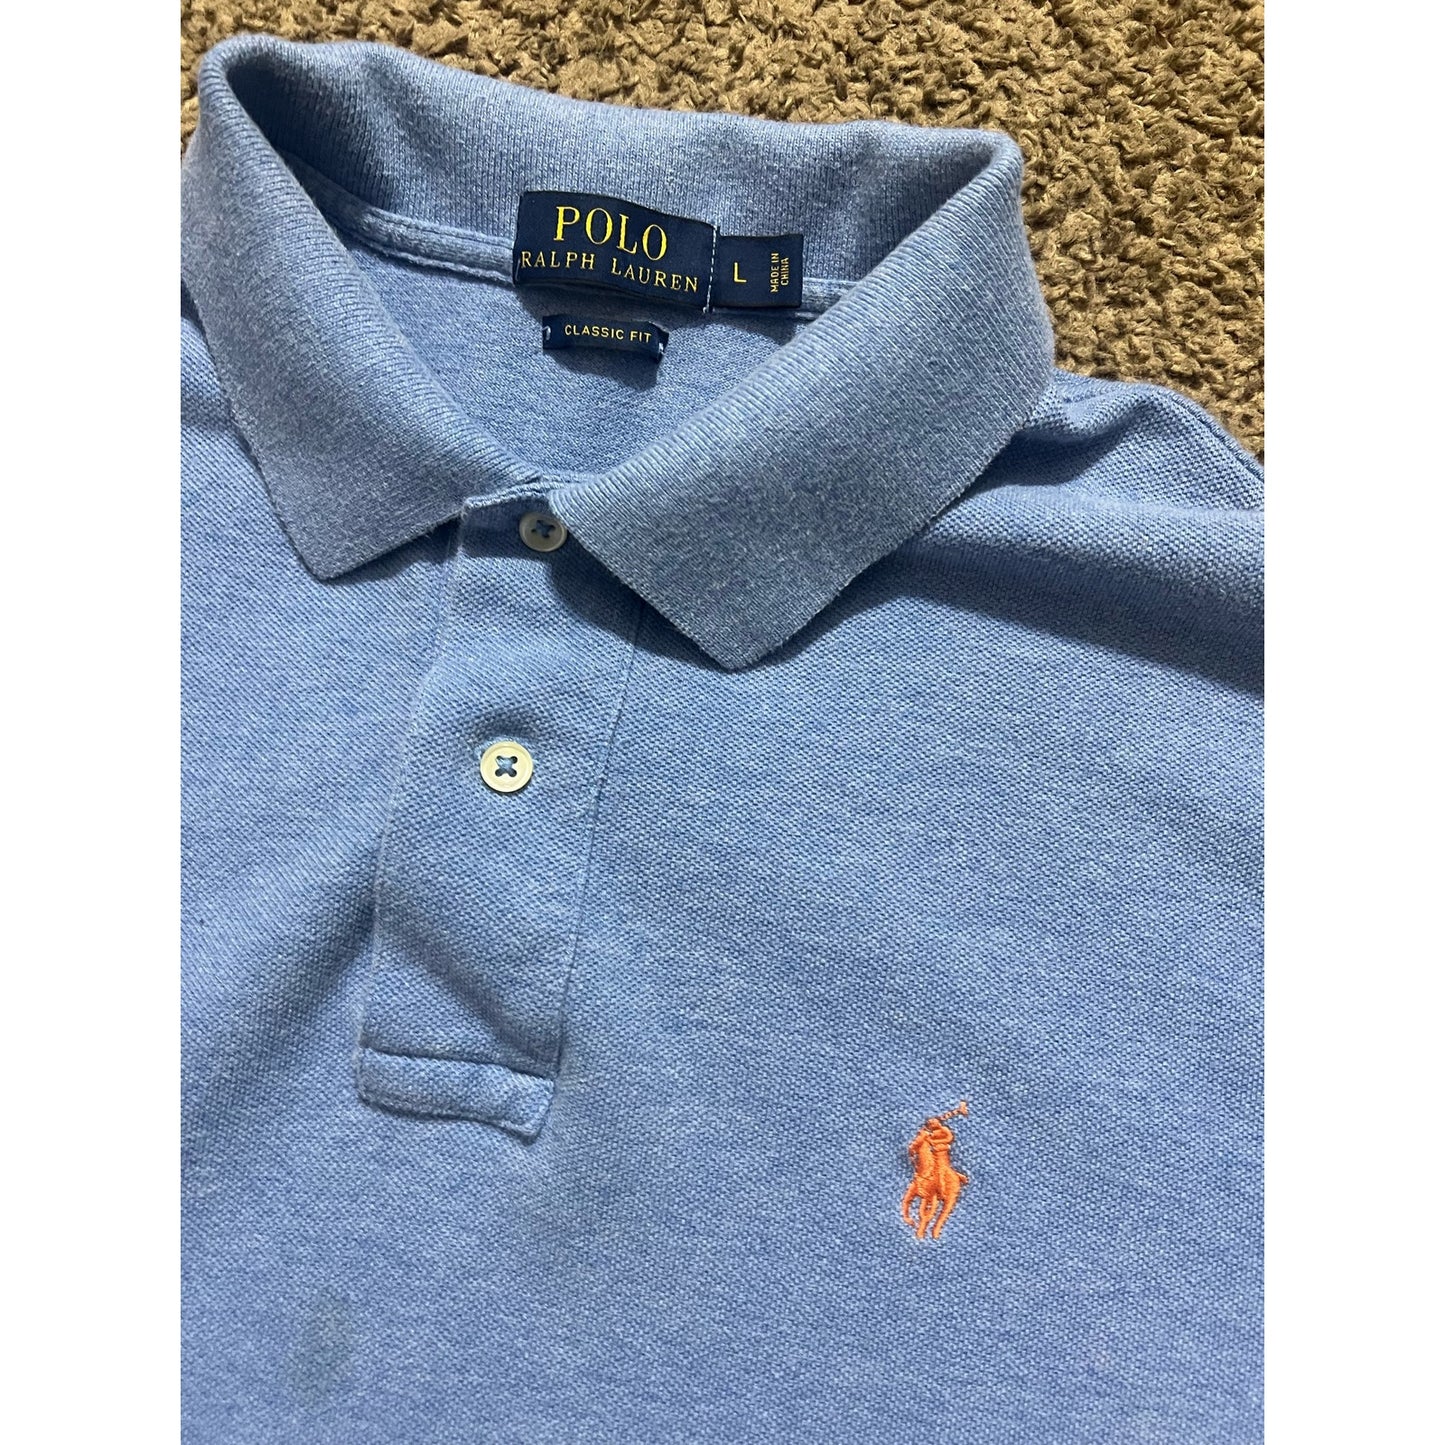 Polo Ralph Lauren Collar Shirt